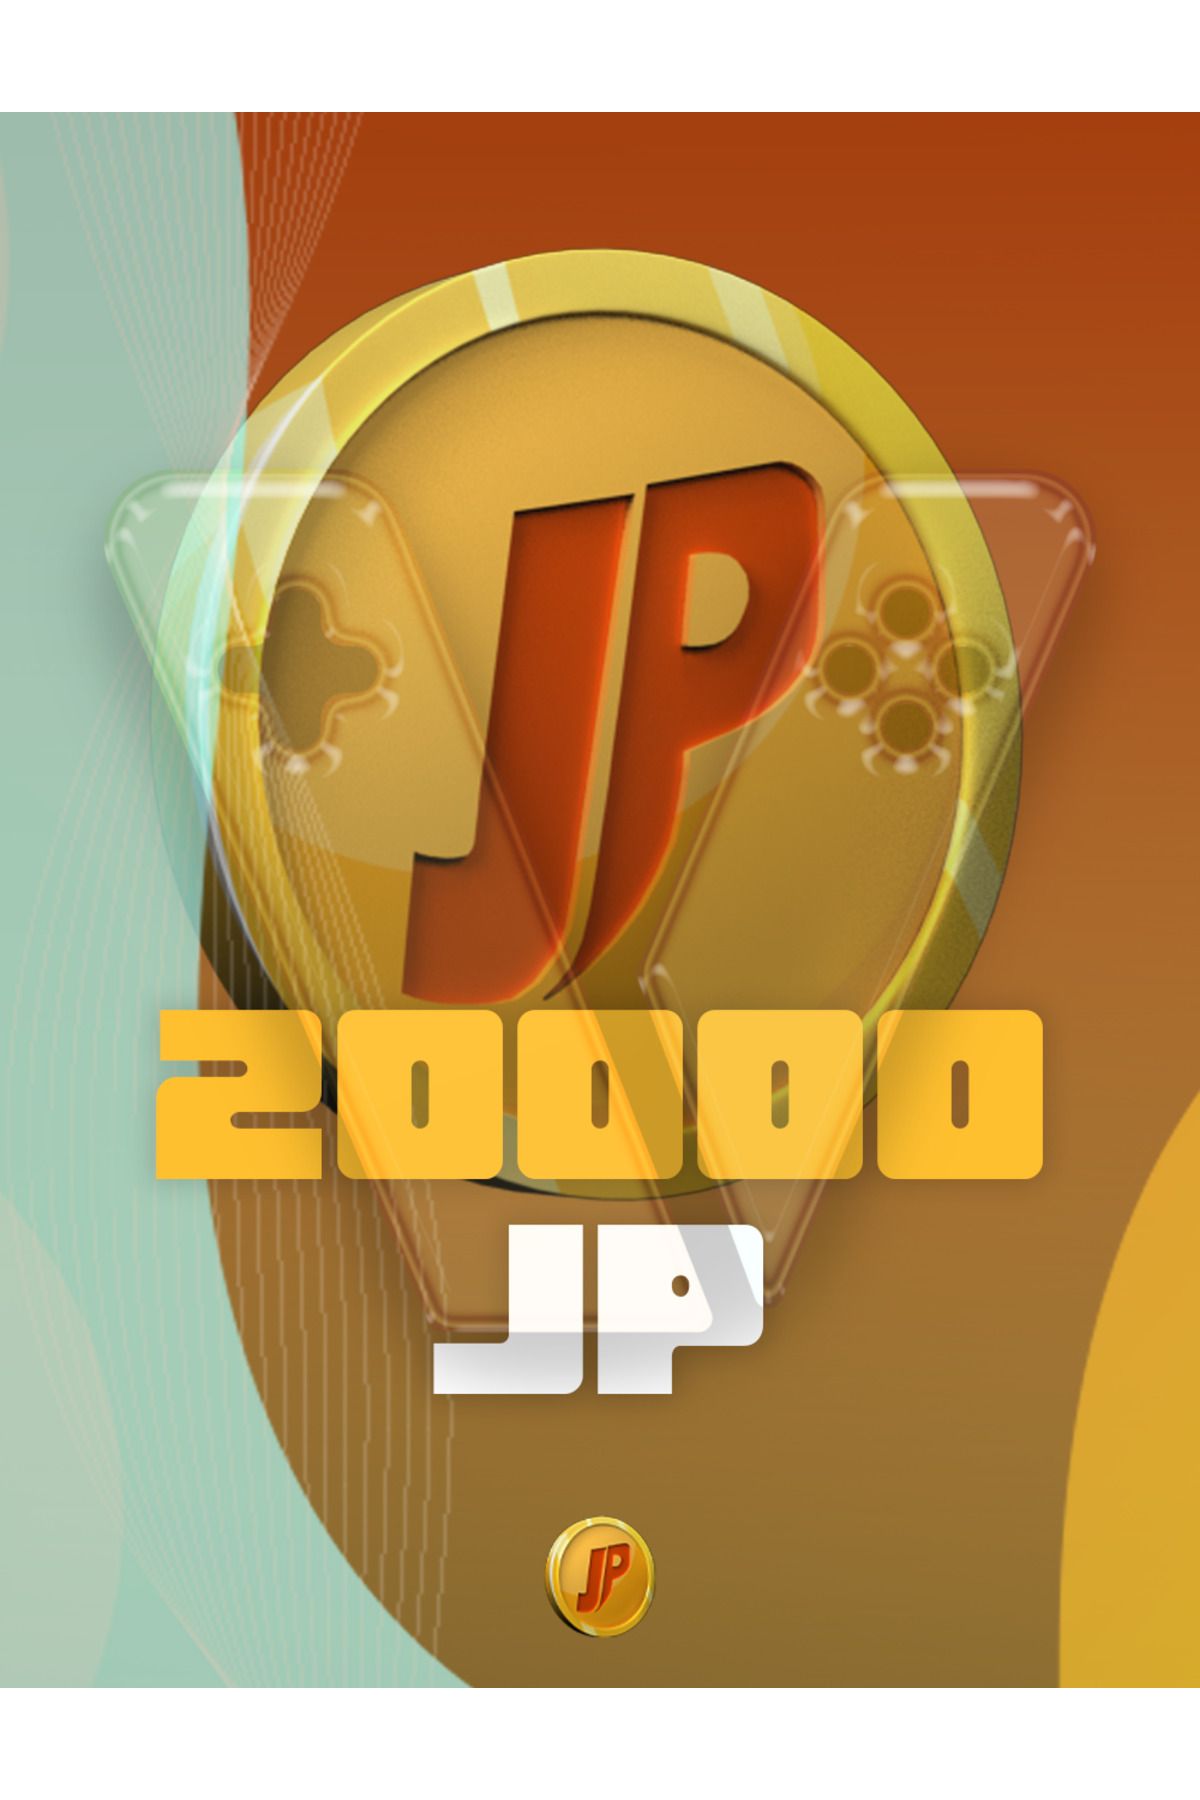 Joygame 20,000 Joypara